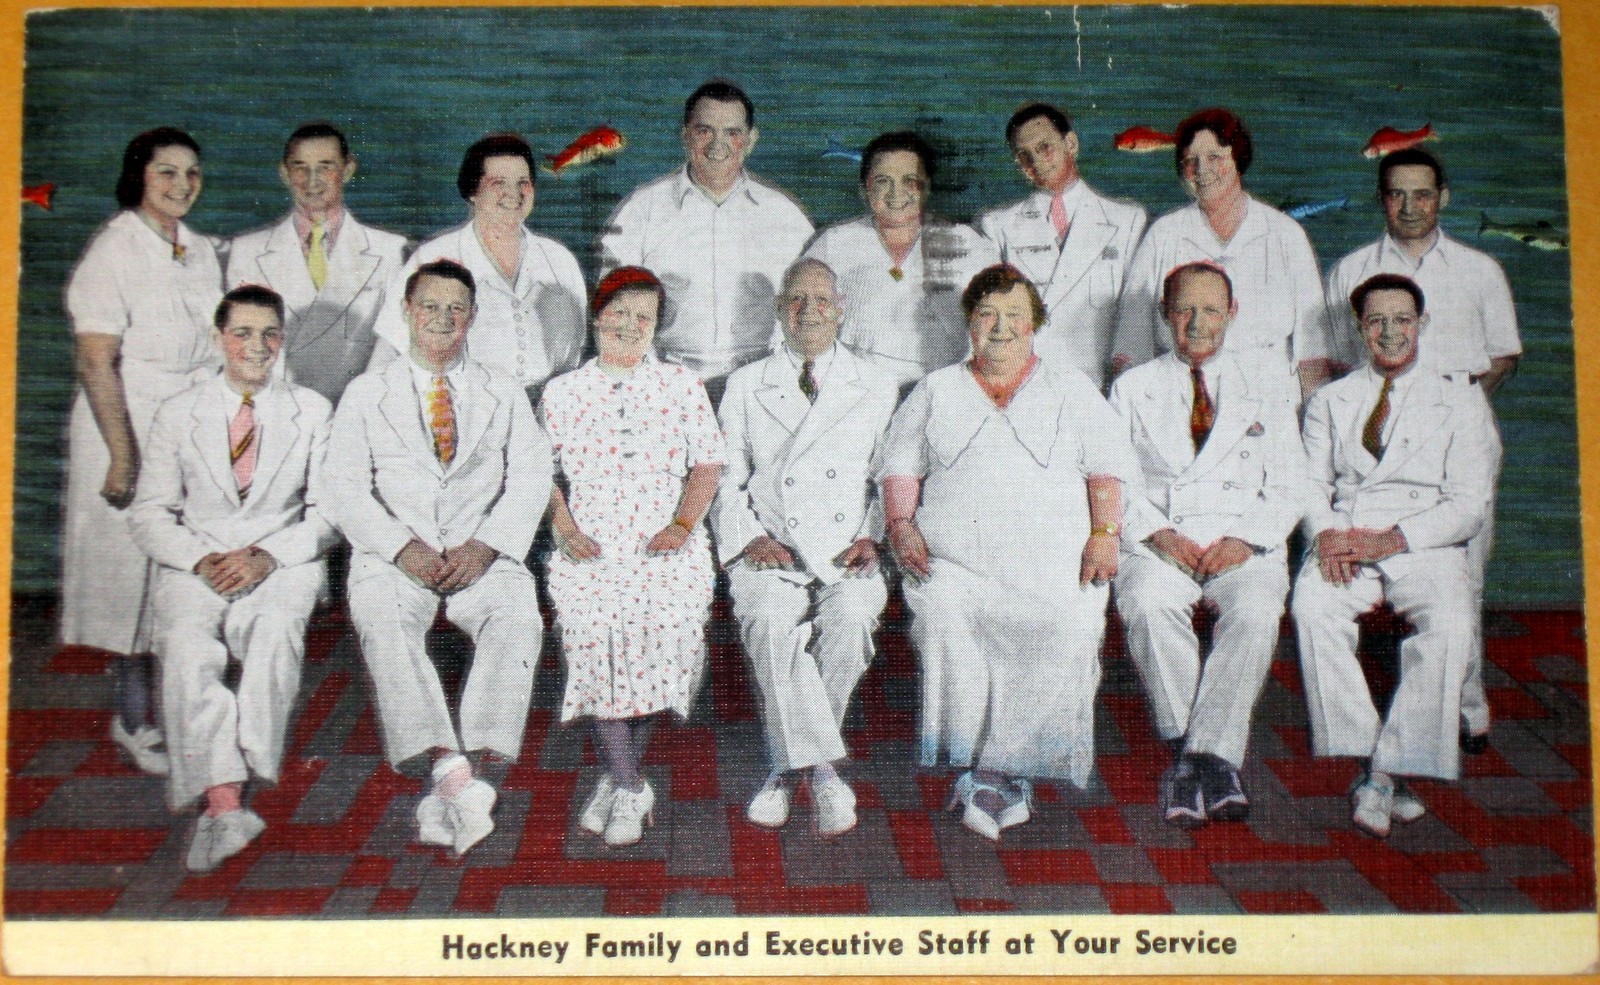 Atlantic City - Hackneys Restaurant - Staff - 1920s